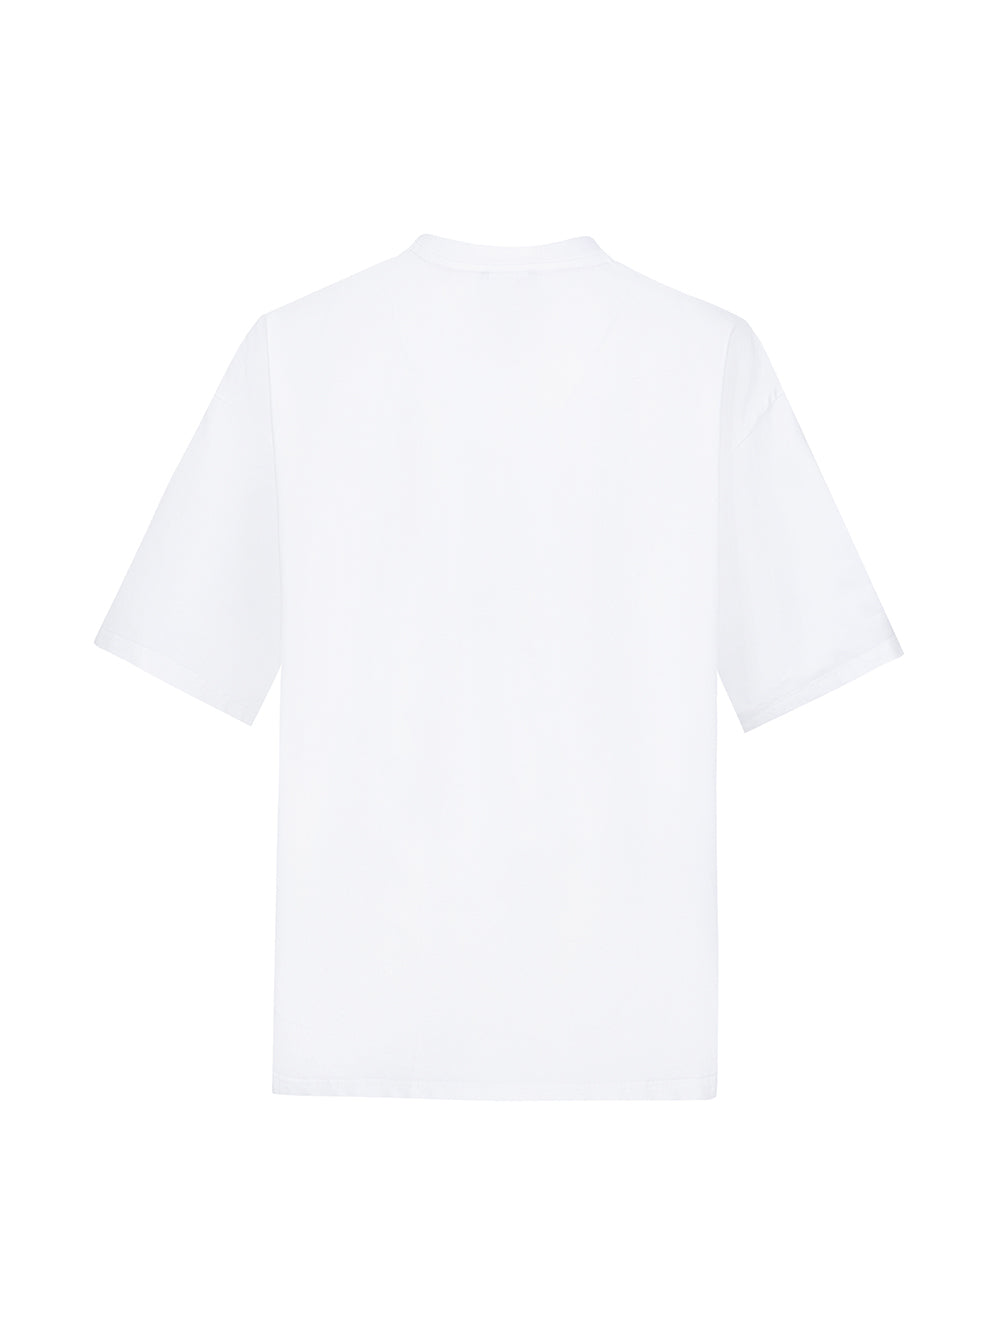 MUKZIN White Graphic Oversized T-Shirt